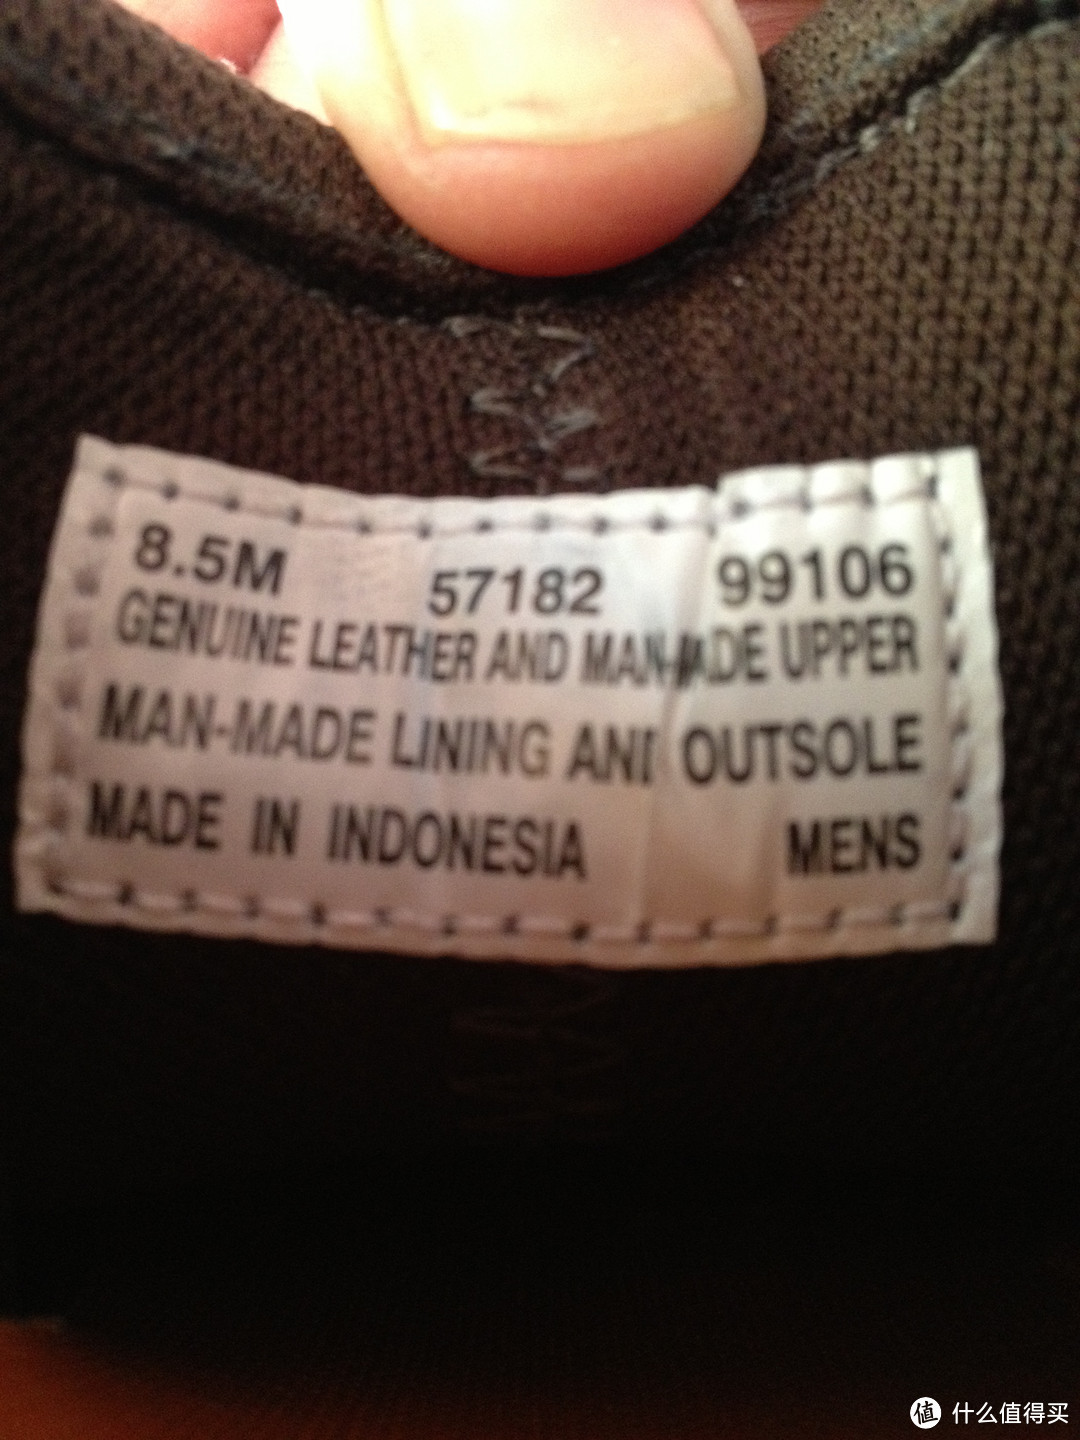 鞋子里面的标牌，居然是印尼制造